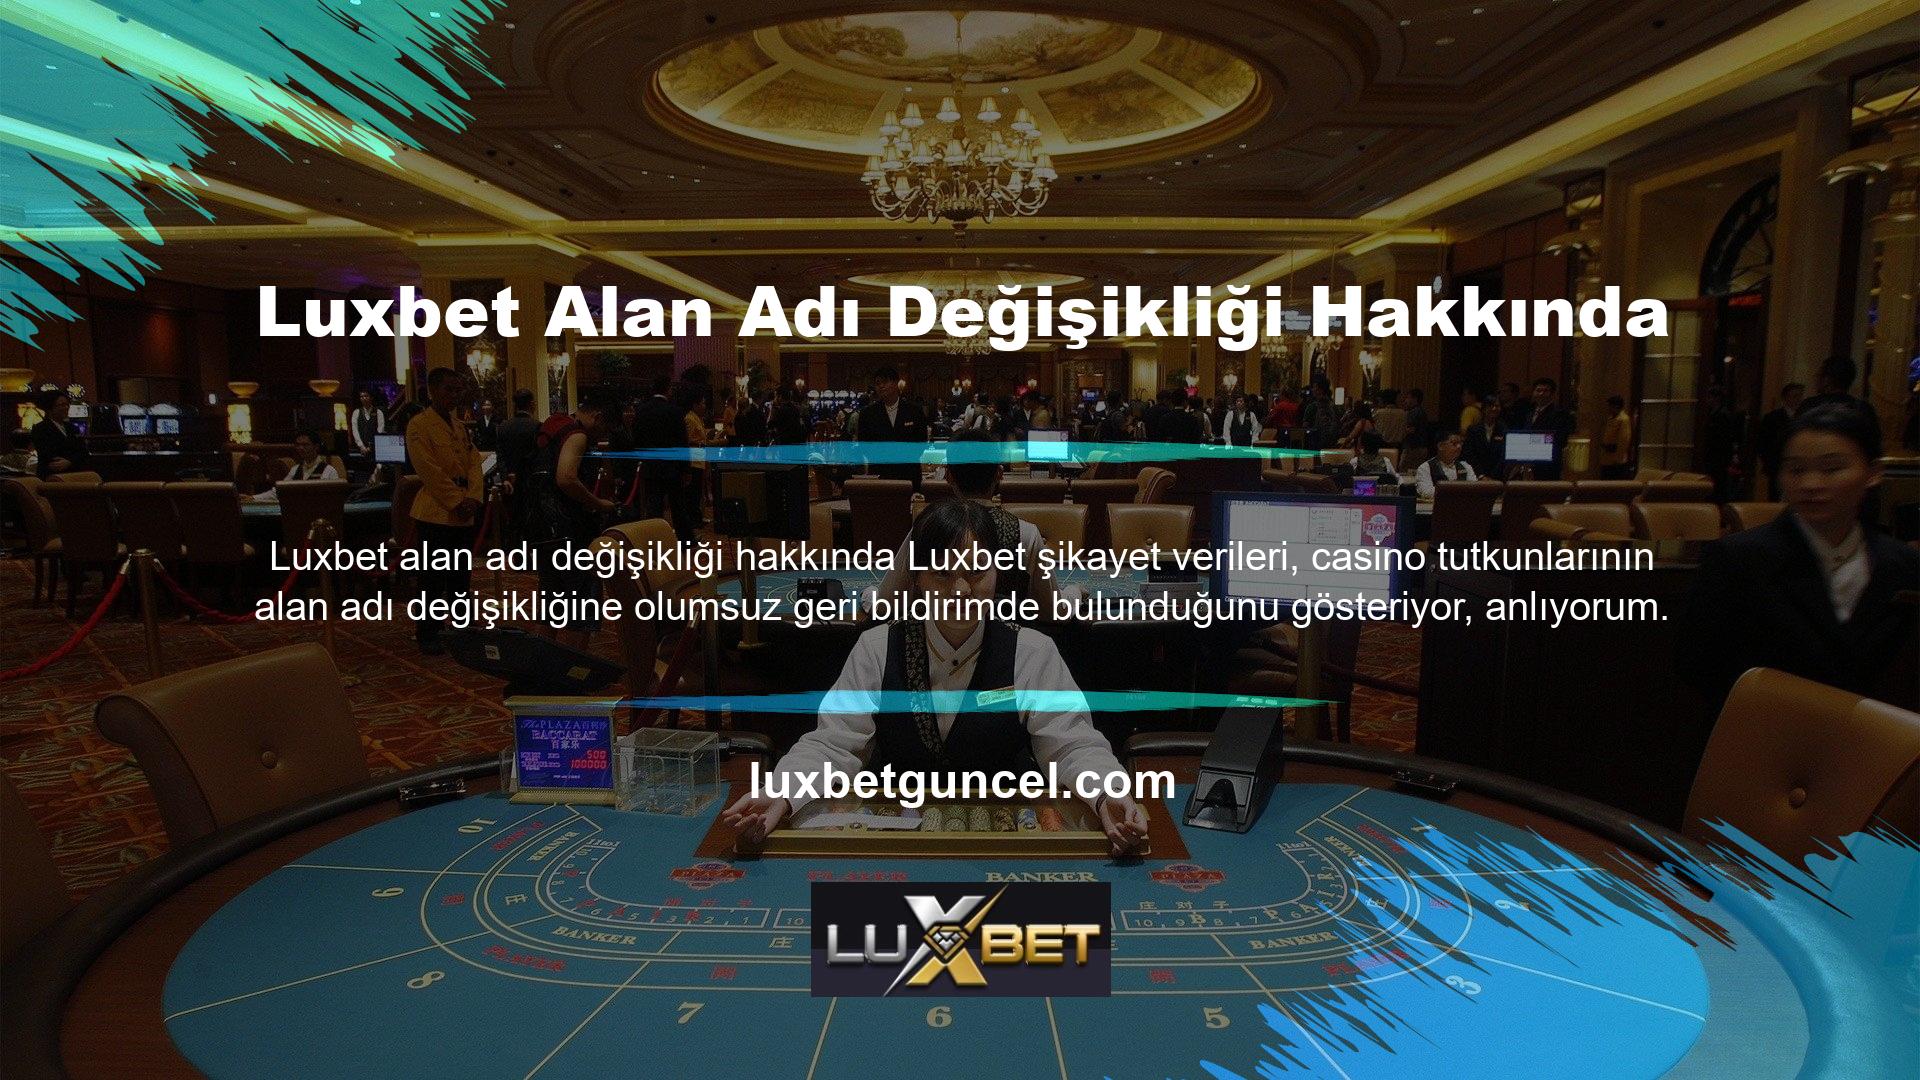 Web sitesinin alan adının değiştirilmesinin nedeni, casino platformunun BTK tarafından yasa dışı olarak sınıflandırılmış olmasıdır